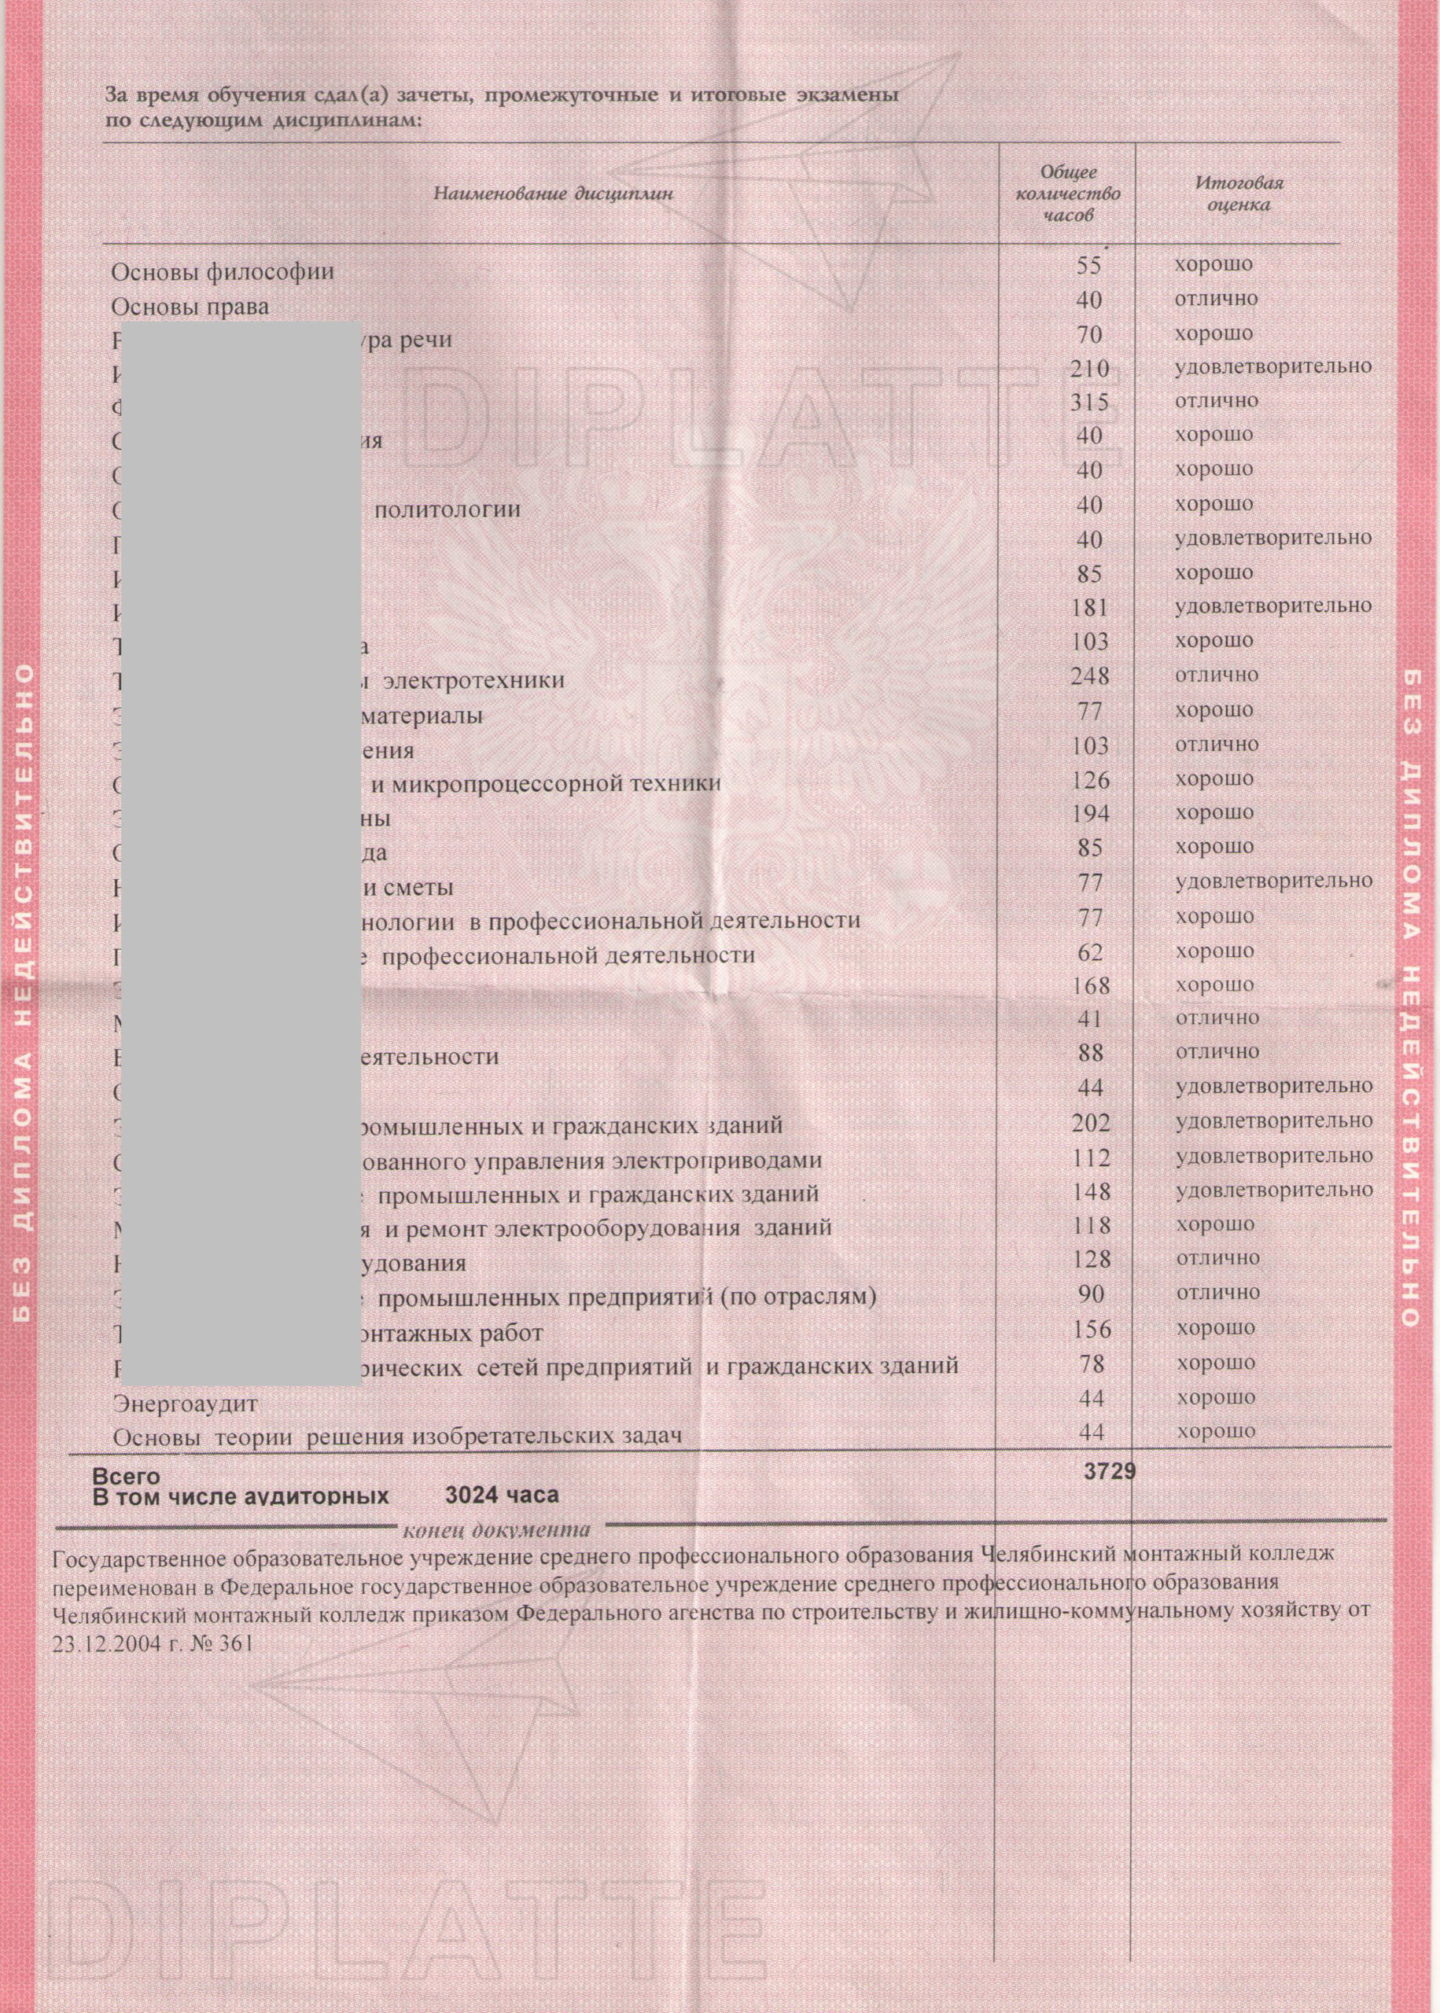 Предметы диплома Челябинского монтажного колледжа 2005 года выдачи